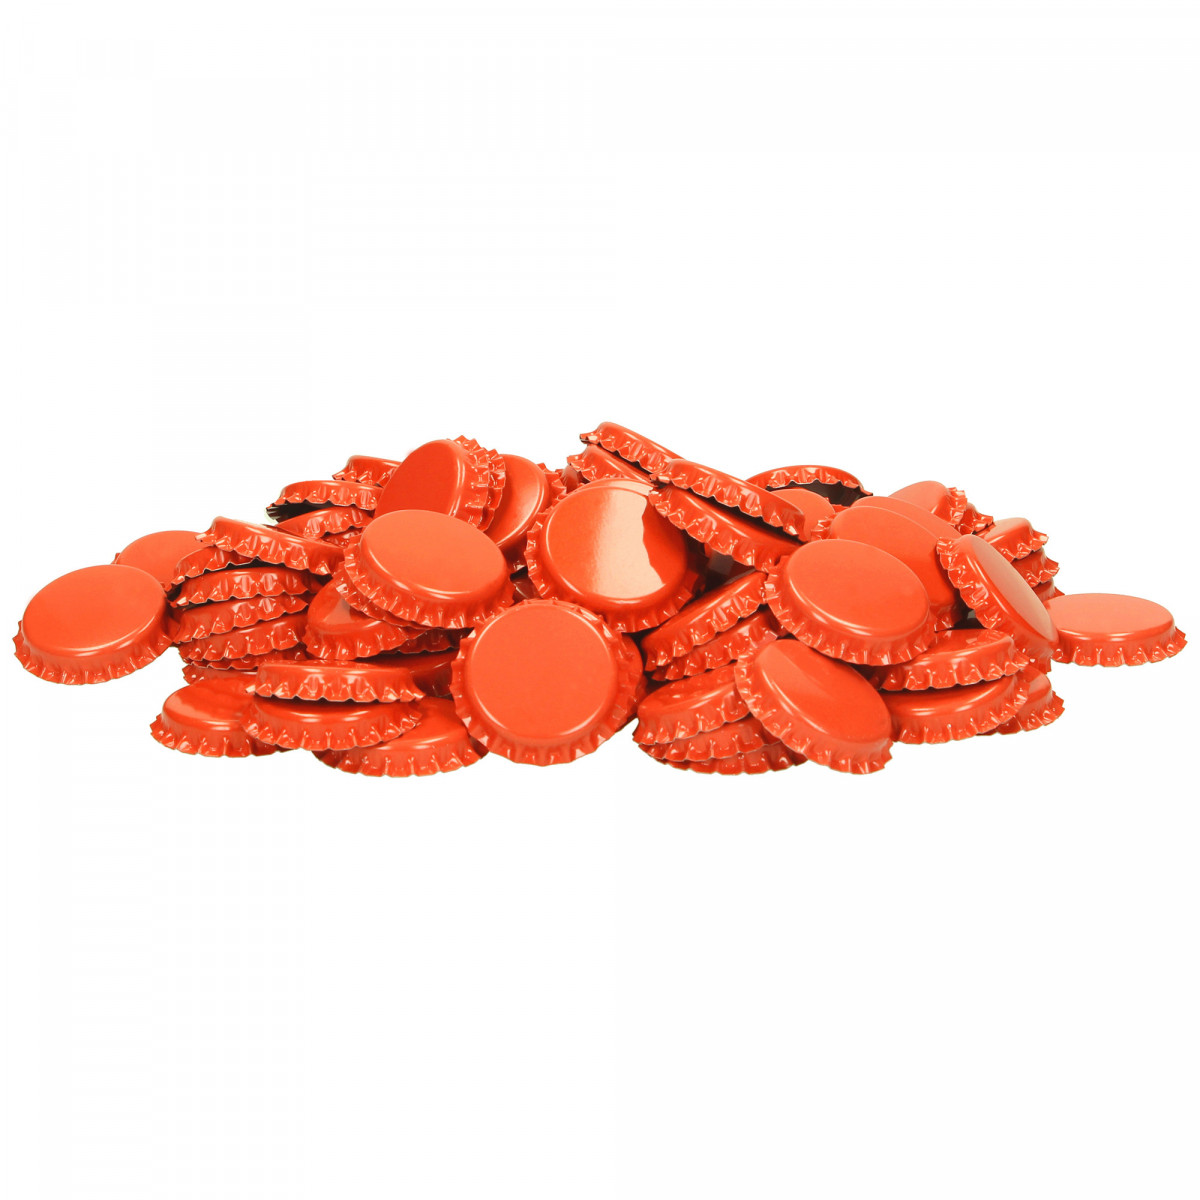 Cown corks 26 mm orange 1,000 pcs